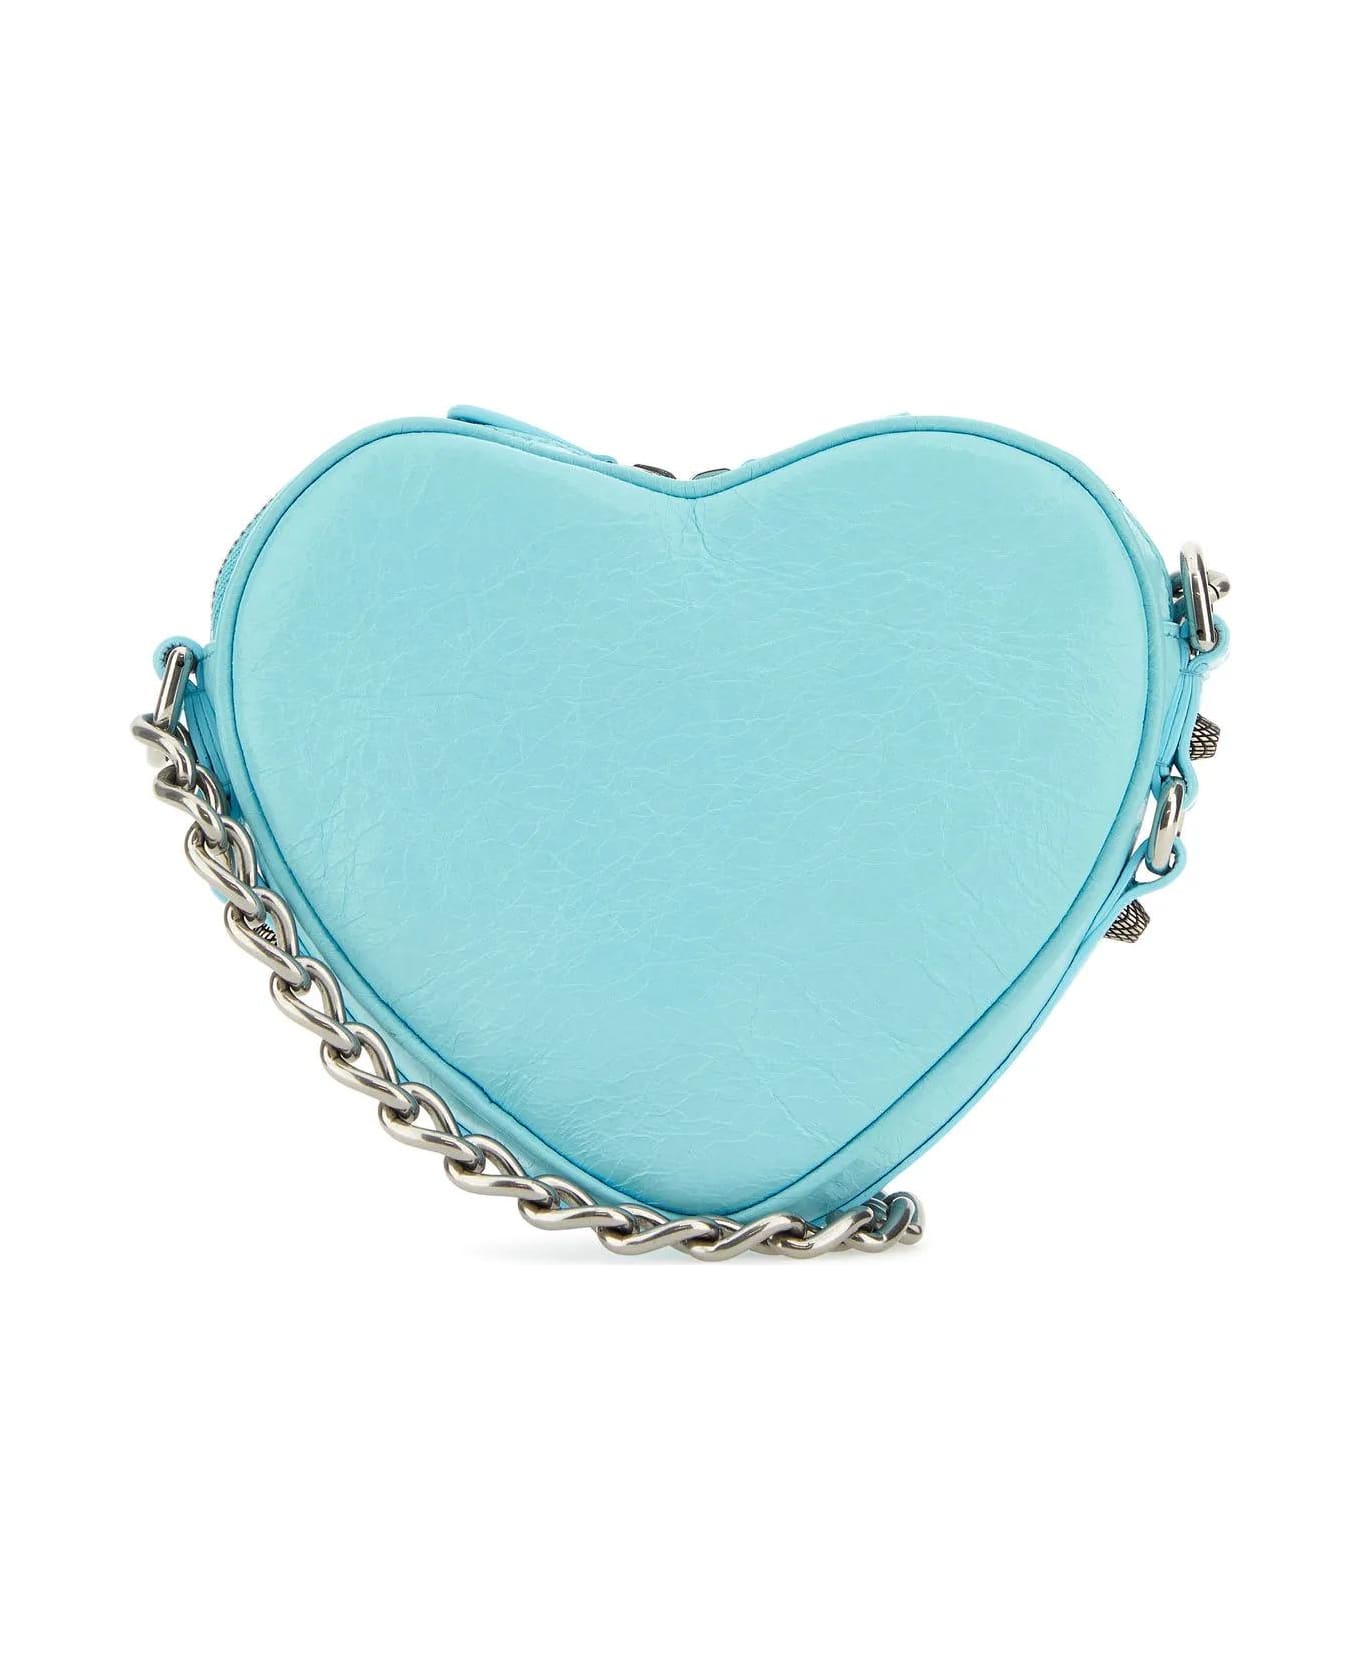 Balenciaga Light Blue Leather Le Cagole Heart Mini Crossbody Bag - SEABLUE